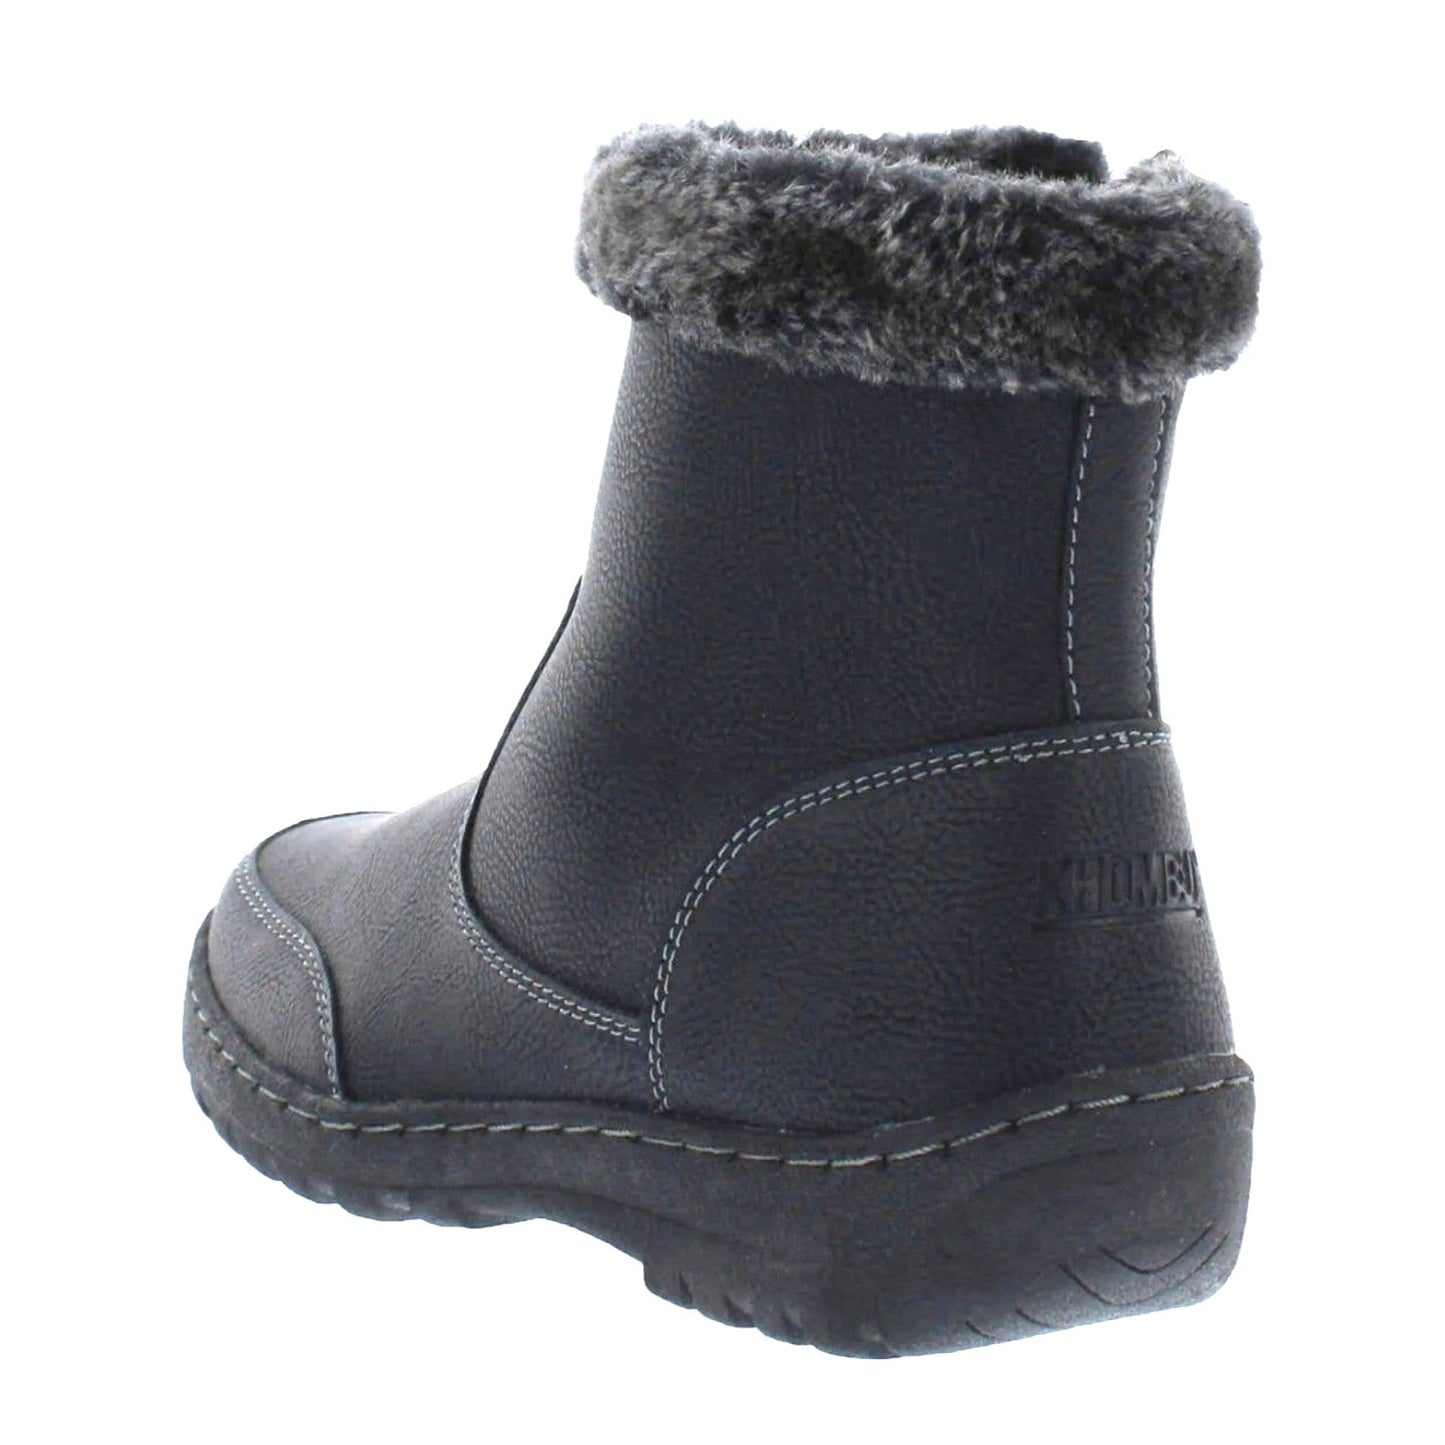 KHOMBU Boots Woman's 8 Addison Outdoor Black Faux fur Water-repellent Shoes